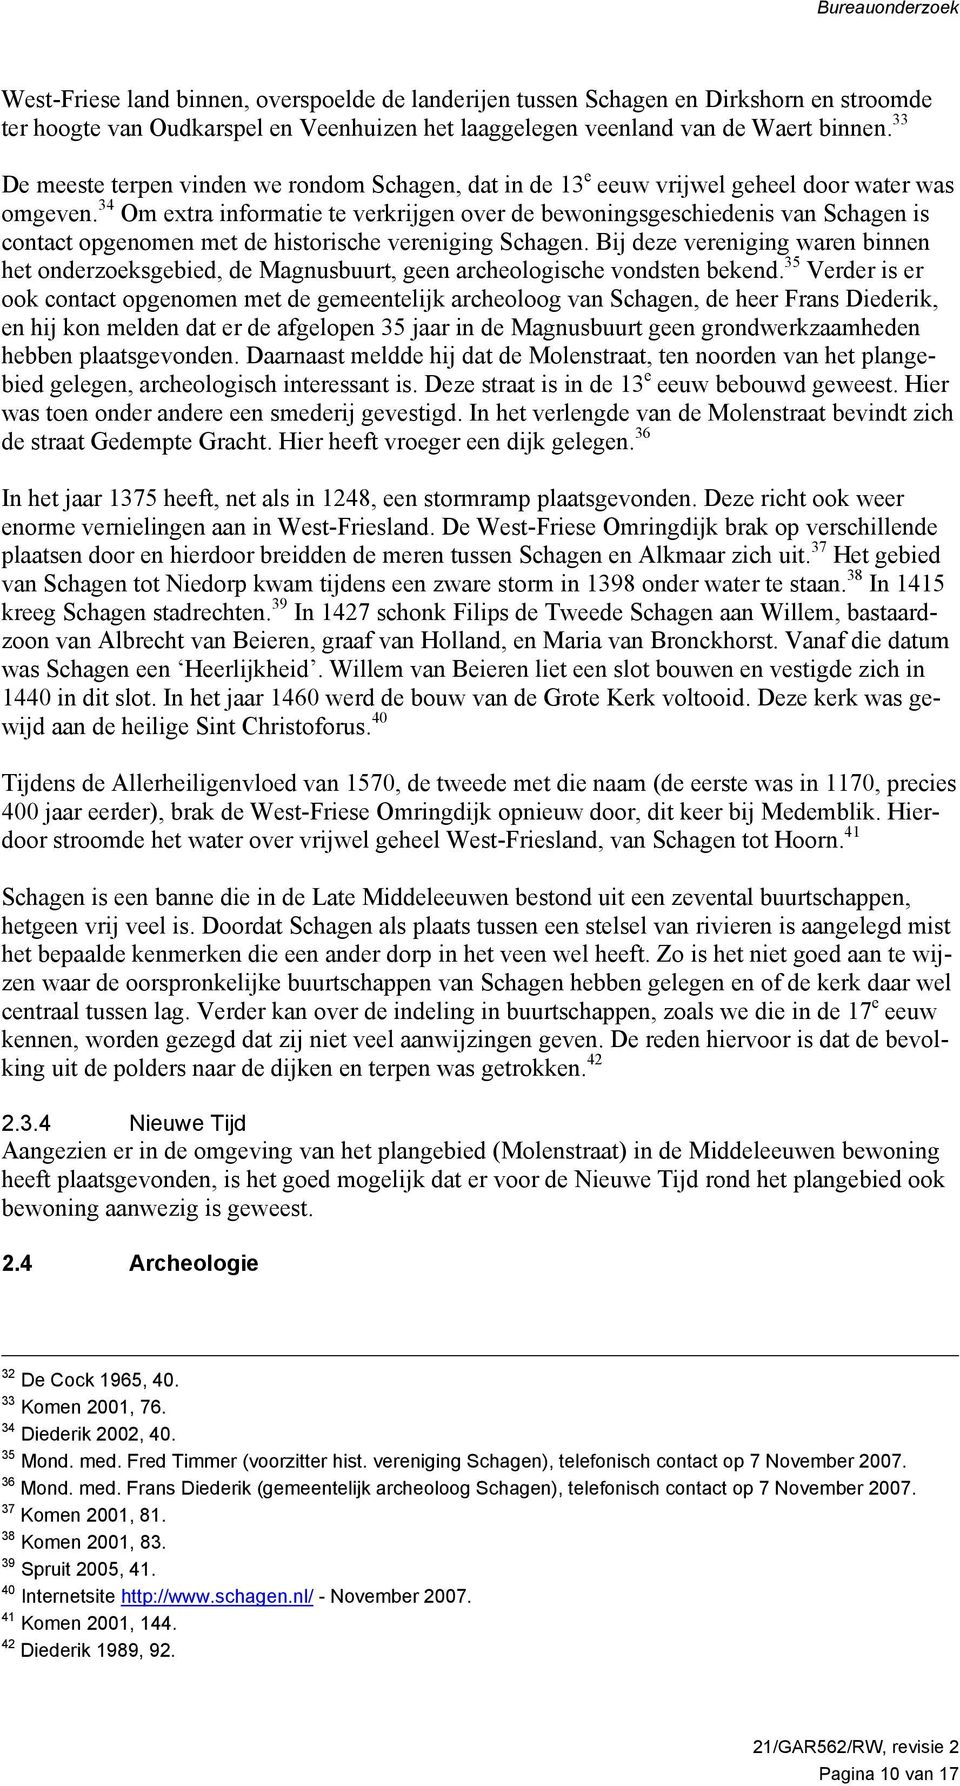 34 Om extra informatie te verkrijgen over de bewoningsgeschiedenis van Schagen is contact opgenomen met de historische vereniging Schagen.